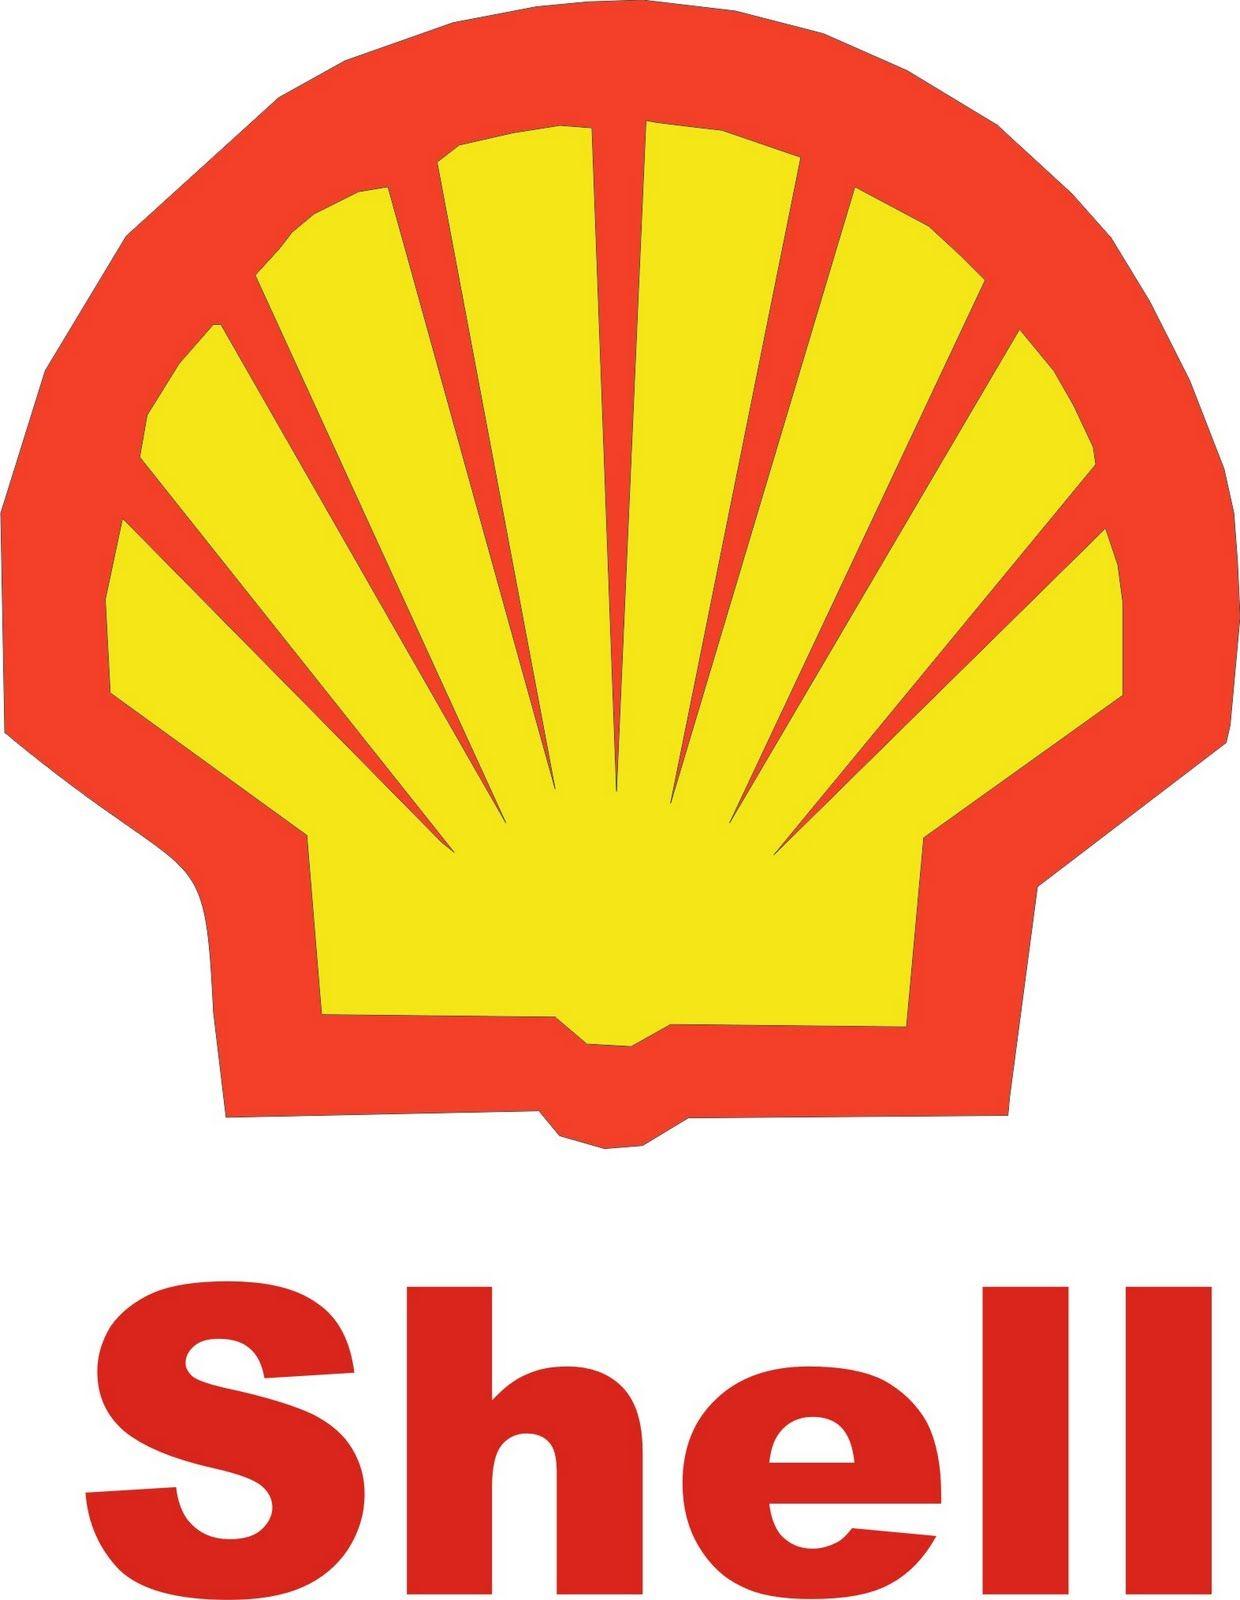 Descriptive Logo - descriptive logo 10. Descriptive Logos. Royal dutch shell, Shell